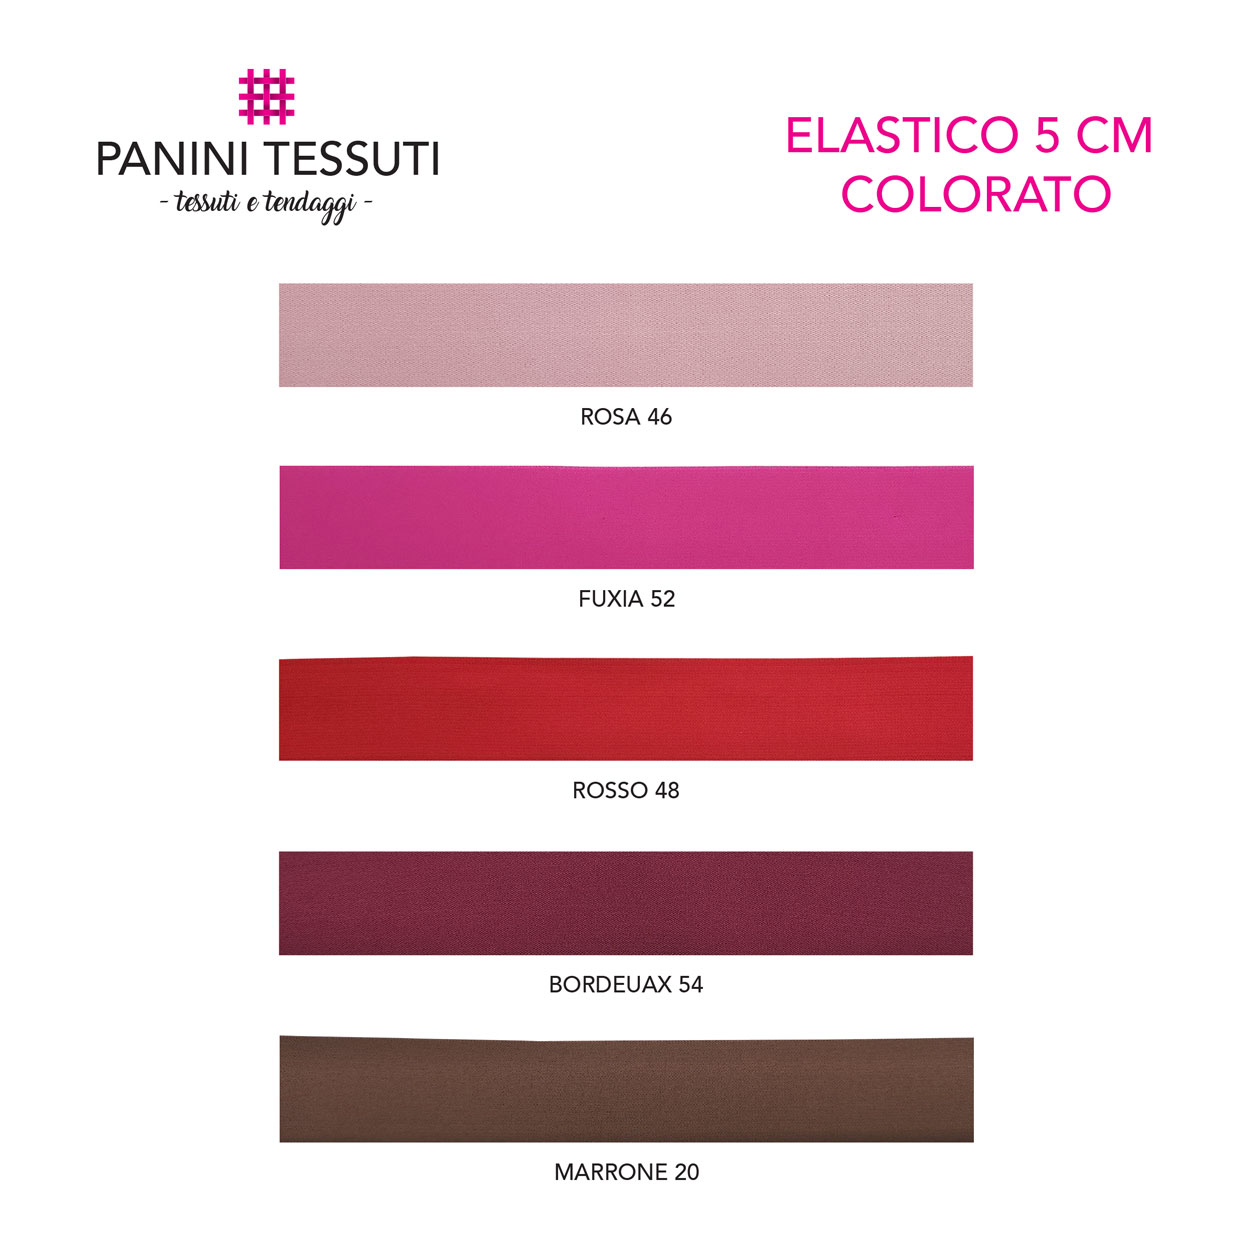 elastico-5-cm-colorato